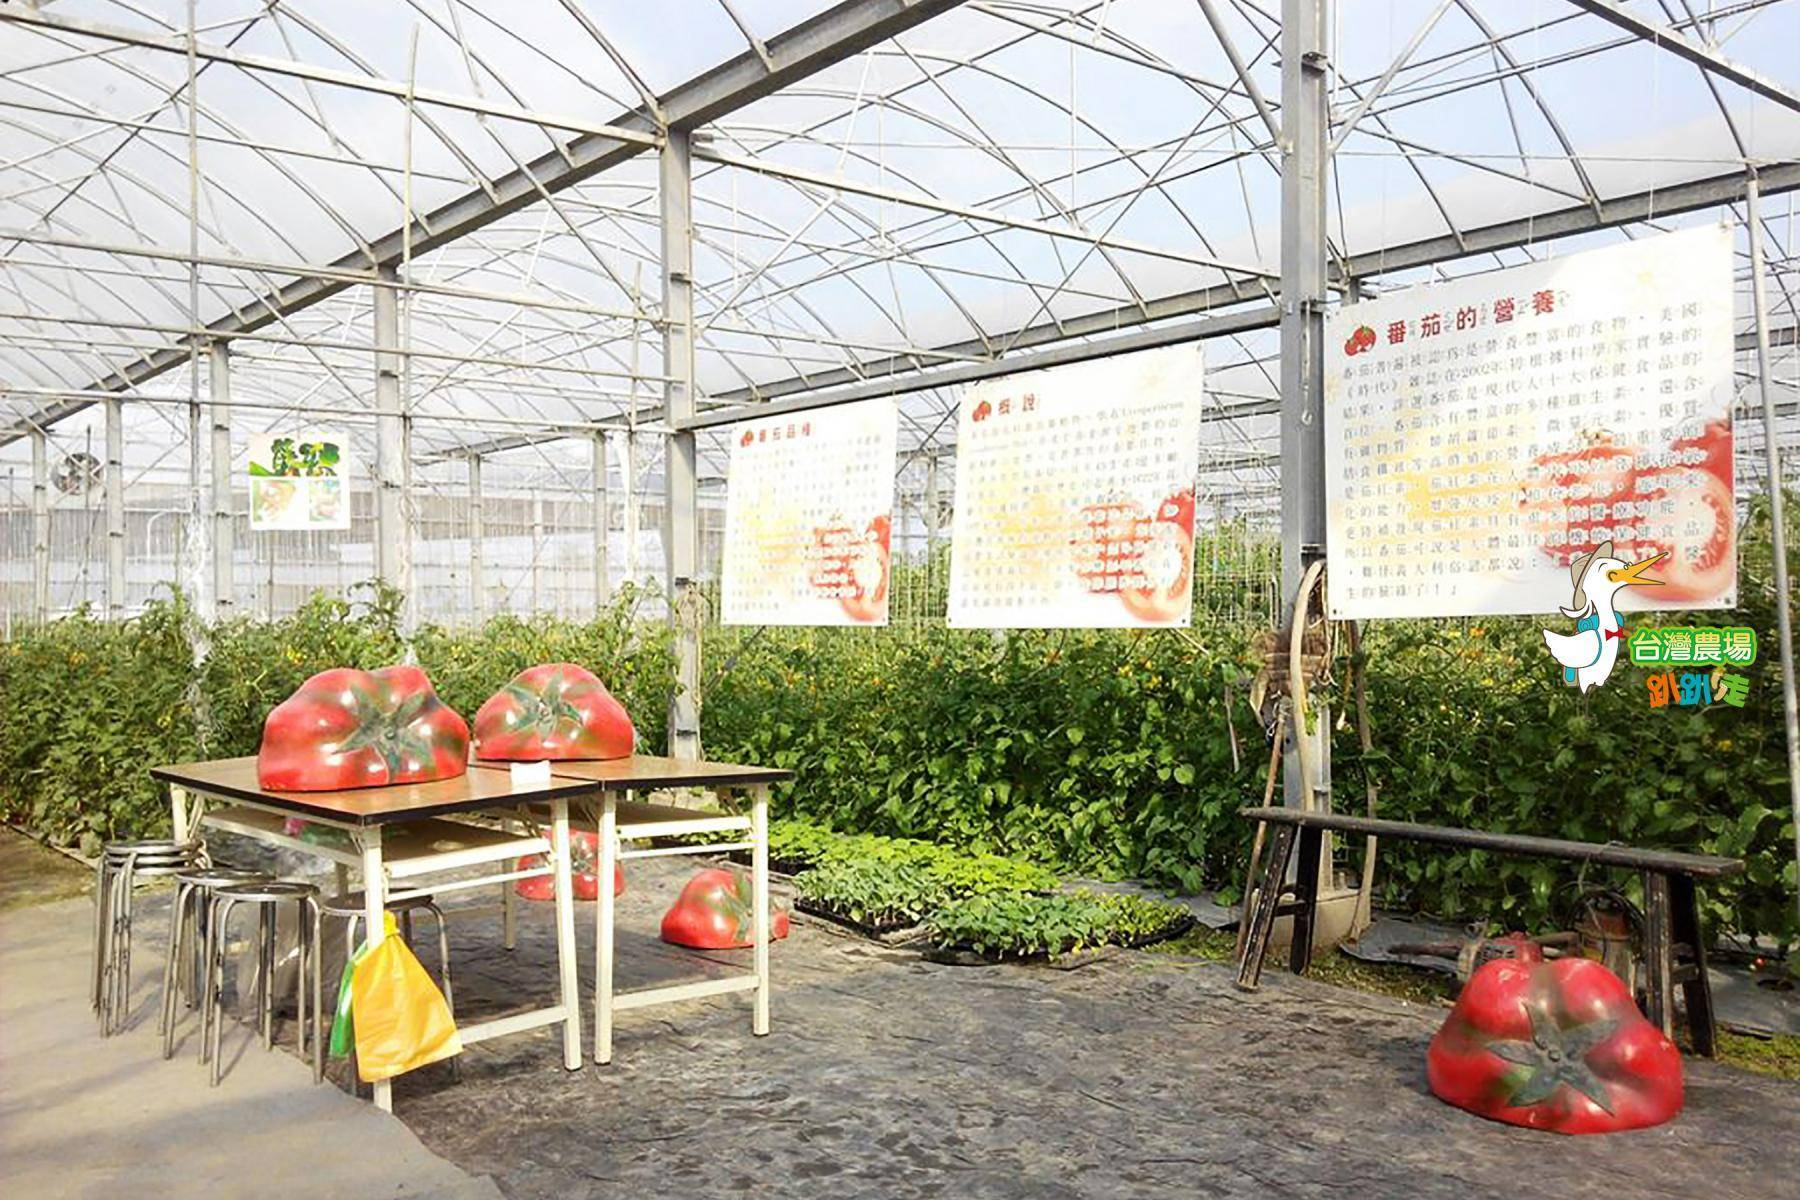 宜蘭-藤結教育農場-採果(番茄)體驗券1